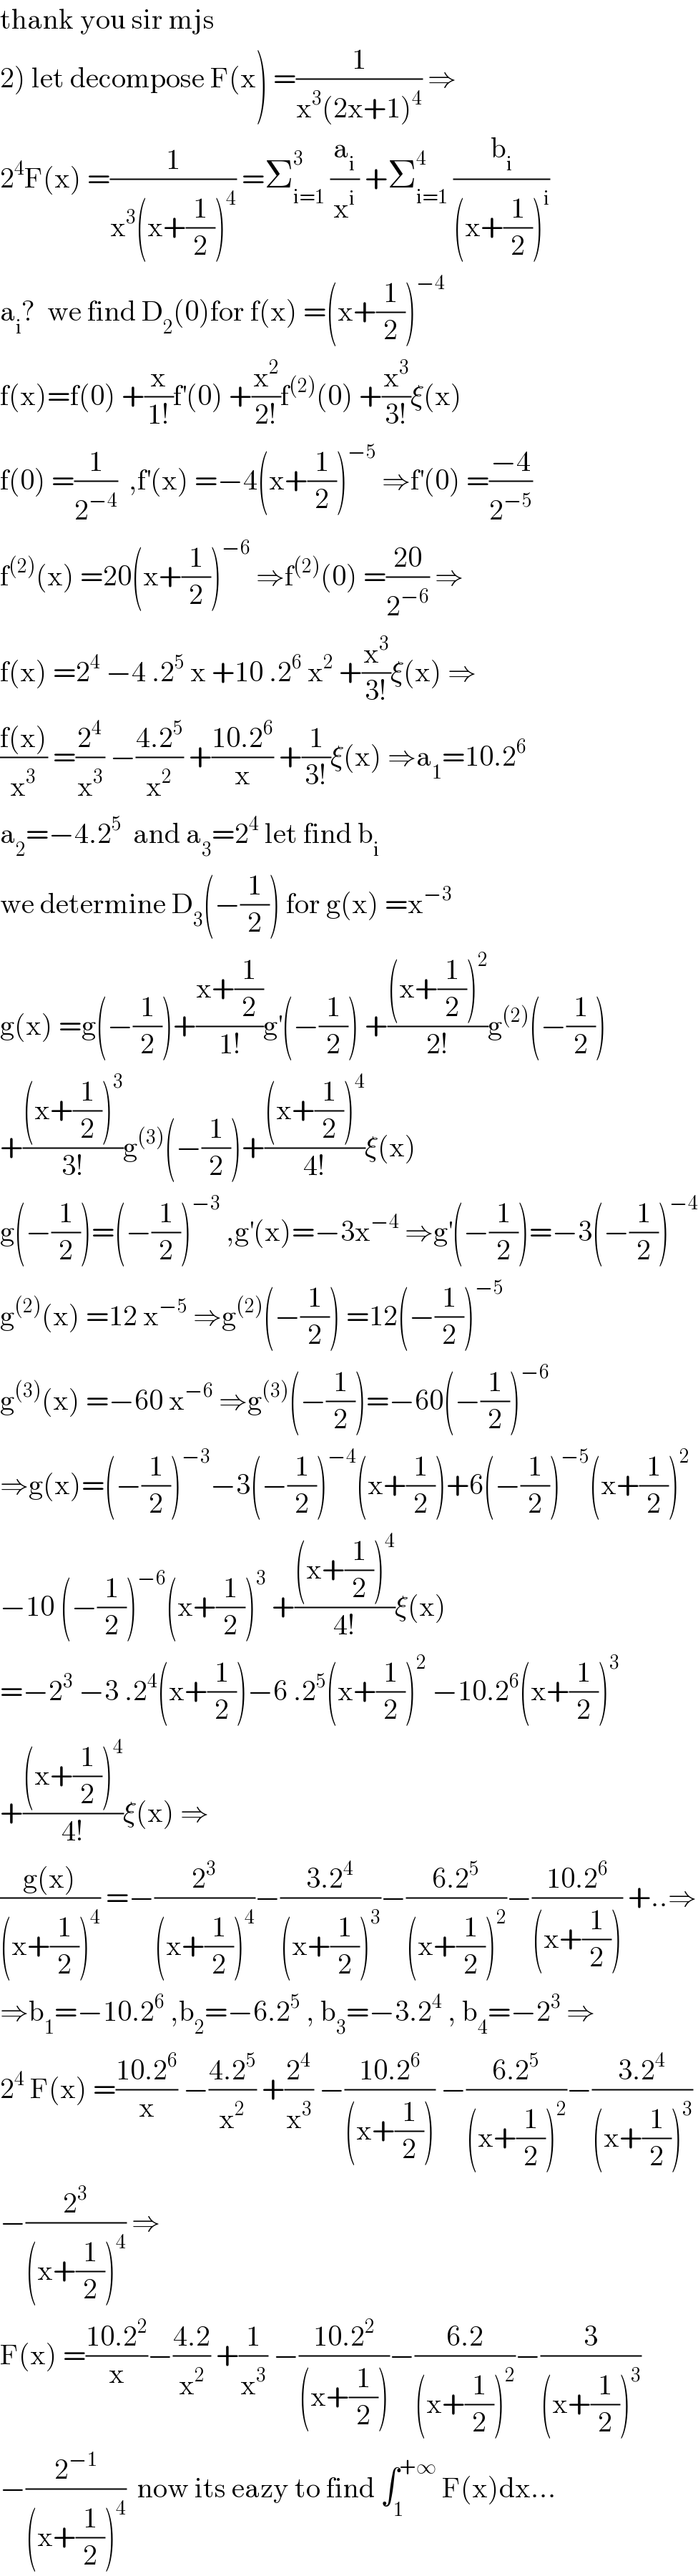 thank you sir mjs  2) let decompose F(x) =(1/(x^3 (2x+1)^4 )) ⇒  2^4 F(x) =(1/(x^3 (x+(1/2))^4 )) =Σ_(i=1) ^3  (a_i /x^i ) +Σ_(i=1) ^4  (b_i /((x+(1/2))^i ))  a_i ?  we find D_2 (0)for f(x) =(x+(1/2))^(−4)   f(x)=f(0) +(x/(1!))f^′ (0) +(x^2 /(2!))f^((2)) (0) +(x^3 /(3!))ξ(x)  f(0) =(1/2^(−4) )  ,f^′ (x) =−4(x+(1/2))^(−5)  ⇒f^′ (0) =((−4)/2^(−5) )  f^((2)) (x) =20(x+(1/2))^(−6)  ⇒f^((2)) (0) =((20)/2^(−6) ) ⇒  f(x) =2^4  −4 .2^5  x +10 .2^6  x^2  +(x^3 /(3!))ξ(x) ⇒  ((f(x))/x^3 ) =(2^4 /x^3 ) −((4.2^5 )/x^2 ) +((10.2^6 )/x) +(1/(3!))ξ(x) ⇒a_1 =10.2^6   a_2 =−4.2^5   and a_3 =2^4  let find b_i   we determine D_3 (−(1/2)) for g(x) =x^(−3)   g(x) =g(−(1/2))+((x+(1/2))/(1!))g^′ (−(1/2)) +(((x+(1/2))^2 )/(2!))g^((2)) (−(1/2))  +(((x+(1/2))^3 )/(3!))g^((3)) (−(1/2))+(((x+(1/2))^4 )/(4!))ξ(x)  g(−(1/2))=(−(1/2))^(−3)  ,g^′ (x)=−3x^(−4)  ⇒g^′ (−(1/2))=−3(−(1/2))^(−4)   g^((2)) (x) =12 x^(−5)  ⇒g^((2)) (−(1/2)) =12(−(1/2))^(−5)   g^((3)) (x) =−60 x^(−6)  ⇒g^((3)) (−(1/2))=−60(−(1/2))^(−6)   ⇒g(x)=(−(1/2))^(−3) −3(−(1/2))^(−4) (x+(1/2))+6(−(1/2))^(−5) (x+(1/2))^2   −10 (−(1/2))^(−6) (x+(1/2))^3  +(((x+(1/2))^4 )/(4!))ξ(x)  =−2^3  −3 .2^4 (x+(1/2))−6 .2^5 (x+(1/2))^2  −10.2^6 (x+(1/2))^3   +(((x+(1/2))^4 )/(4!))ξ(x) ⇒  ((g(x))/((x+(1/2))^4 )) =−(2^3 /((x+(1/2))^4 ))−((3.2^4 )/((x+(1/2))^3 ))−((6.2^5 )/((x+(1/2))^2 ))−((10.2^6 )/((x+(1/2)))) +..⇒  ⇒b_1 =−10.2^6  ,b_2 =−6.2^5  , b_3 =−3.2^4  , b_4 =−2^3  ⇒  2^4  F(x) =((10.2^6 )/x) −((4.2^5 )/x^2 ) +(2^4 /x^3 ) −((10.2^6 )/((x+(1/2)))) −((6.2^5 )/((x+(1/2))^2 ))−((3.2^4 )/((x+(1/2))^3 ))  −(2^3 /((x+(1/2))^4 )) ⇒  F(x) =((10.2^2 )/x)−((4.2)/x^2 ) +(1/x^3 ) −((10.2^2 )/((x+(1/2))))−((6.2)/((x+(1/2))^2 ))−(3/((x+(1/2))^3 ))  −(2^(−1) /((x+(1/2))^4 ))  now its eazy to find ∫_1 ^(+∞)  F(x)dx...  